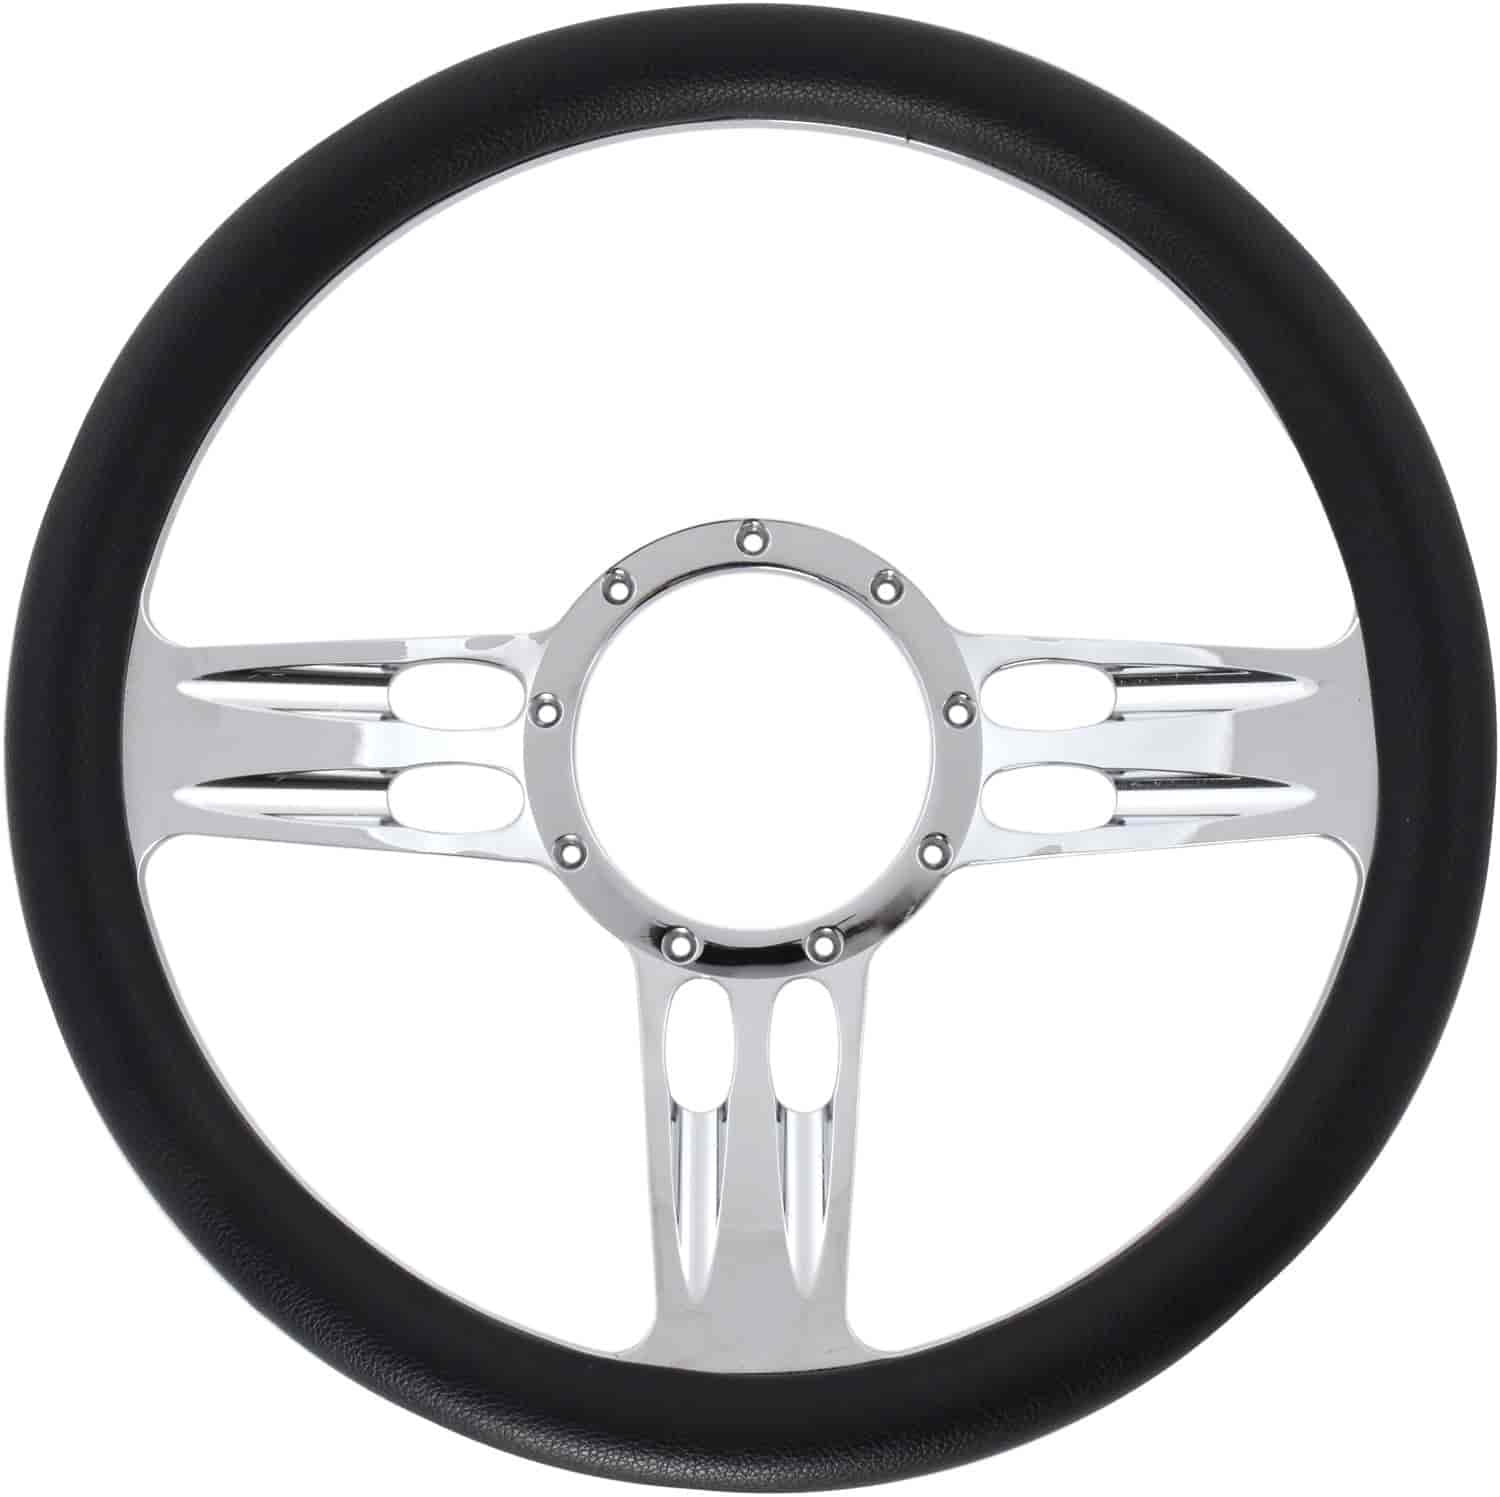 Chrome-Plated Billet Aluminum 14 in. Steering Wheel [3-Slot Spoke Design]